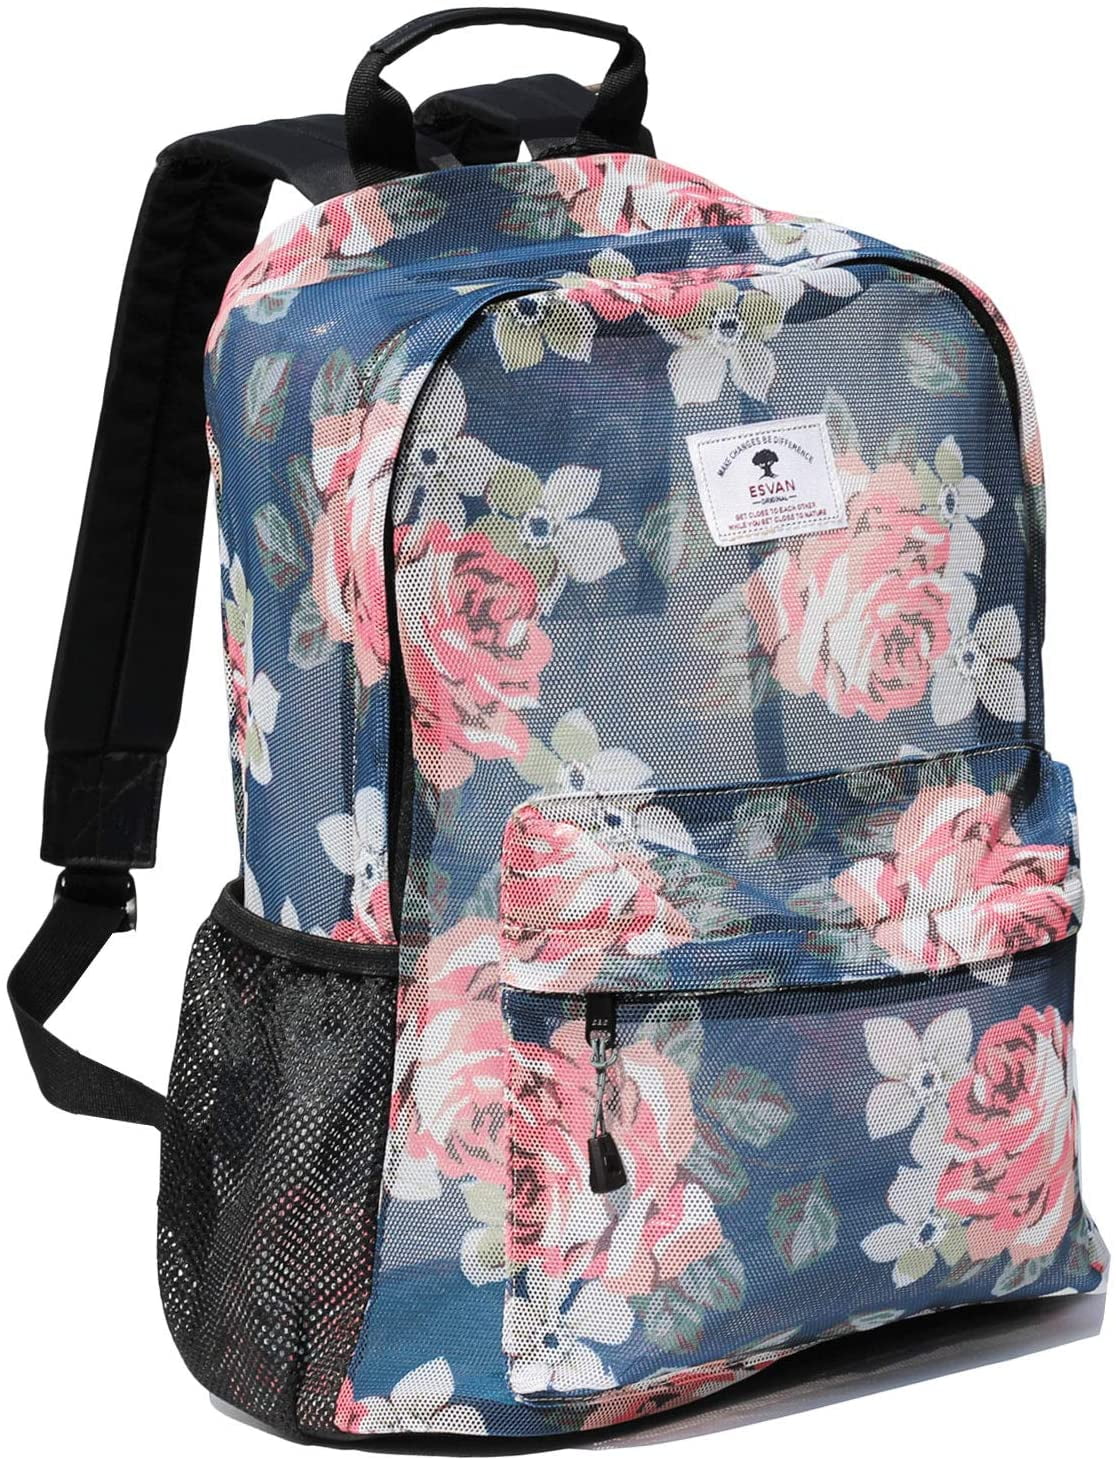 Original Print Mesh Backpack Semi-Transparent Sackpack See Through Beach Bag Daypack Multi-Purpose Women Men Unisex 